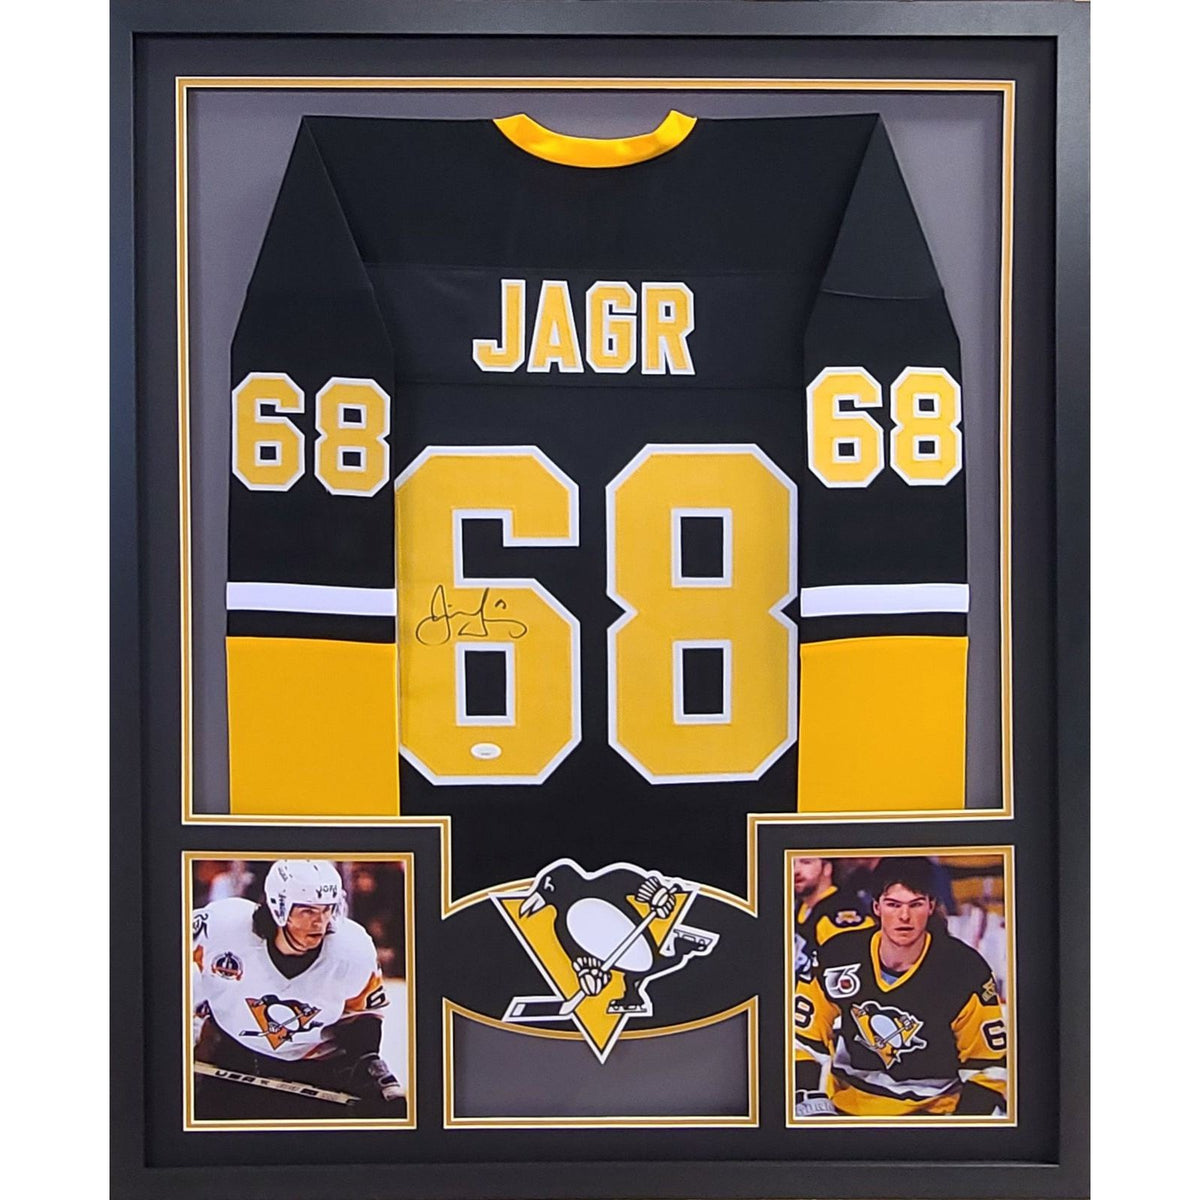 Jaromir Jagr Framed Signed Jersey JSA Autographed Pittsburgh Penguins